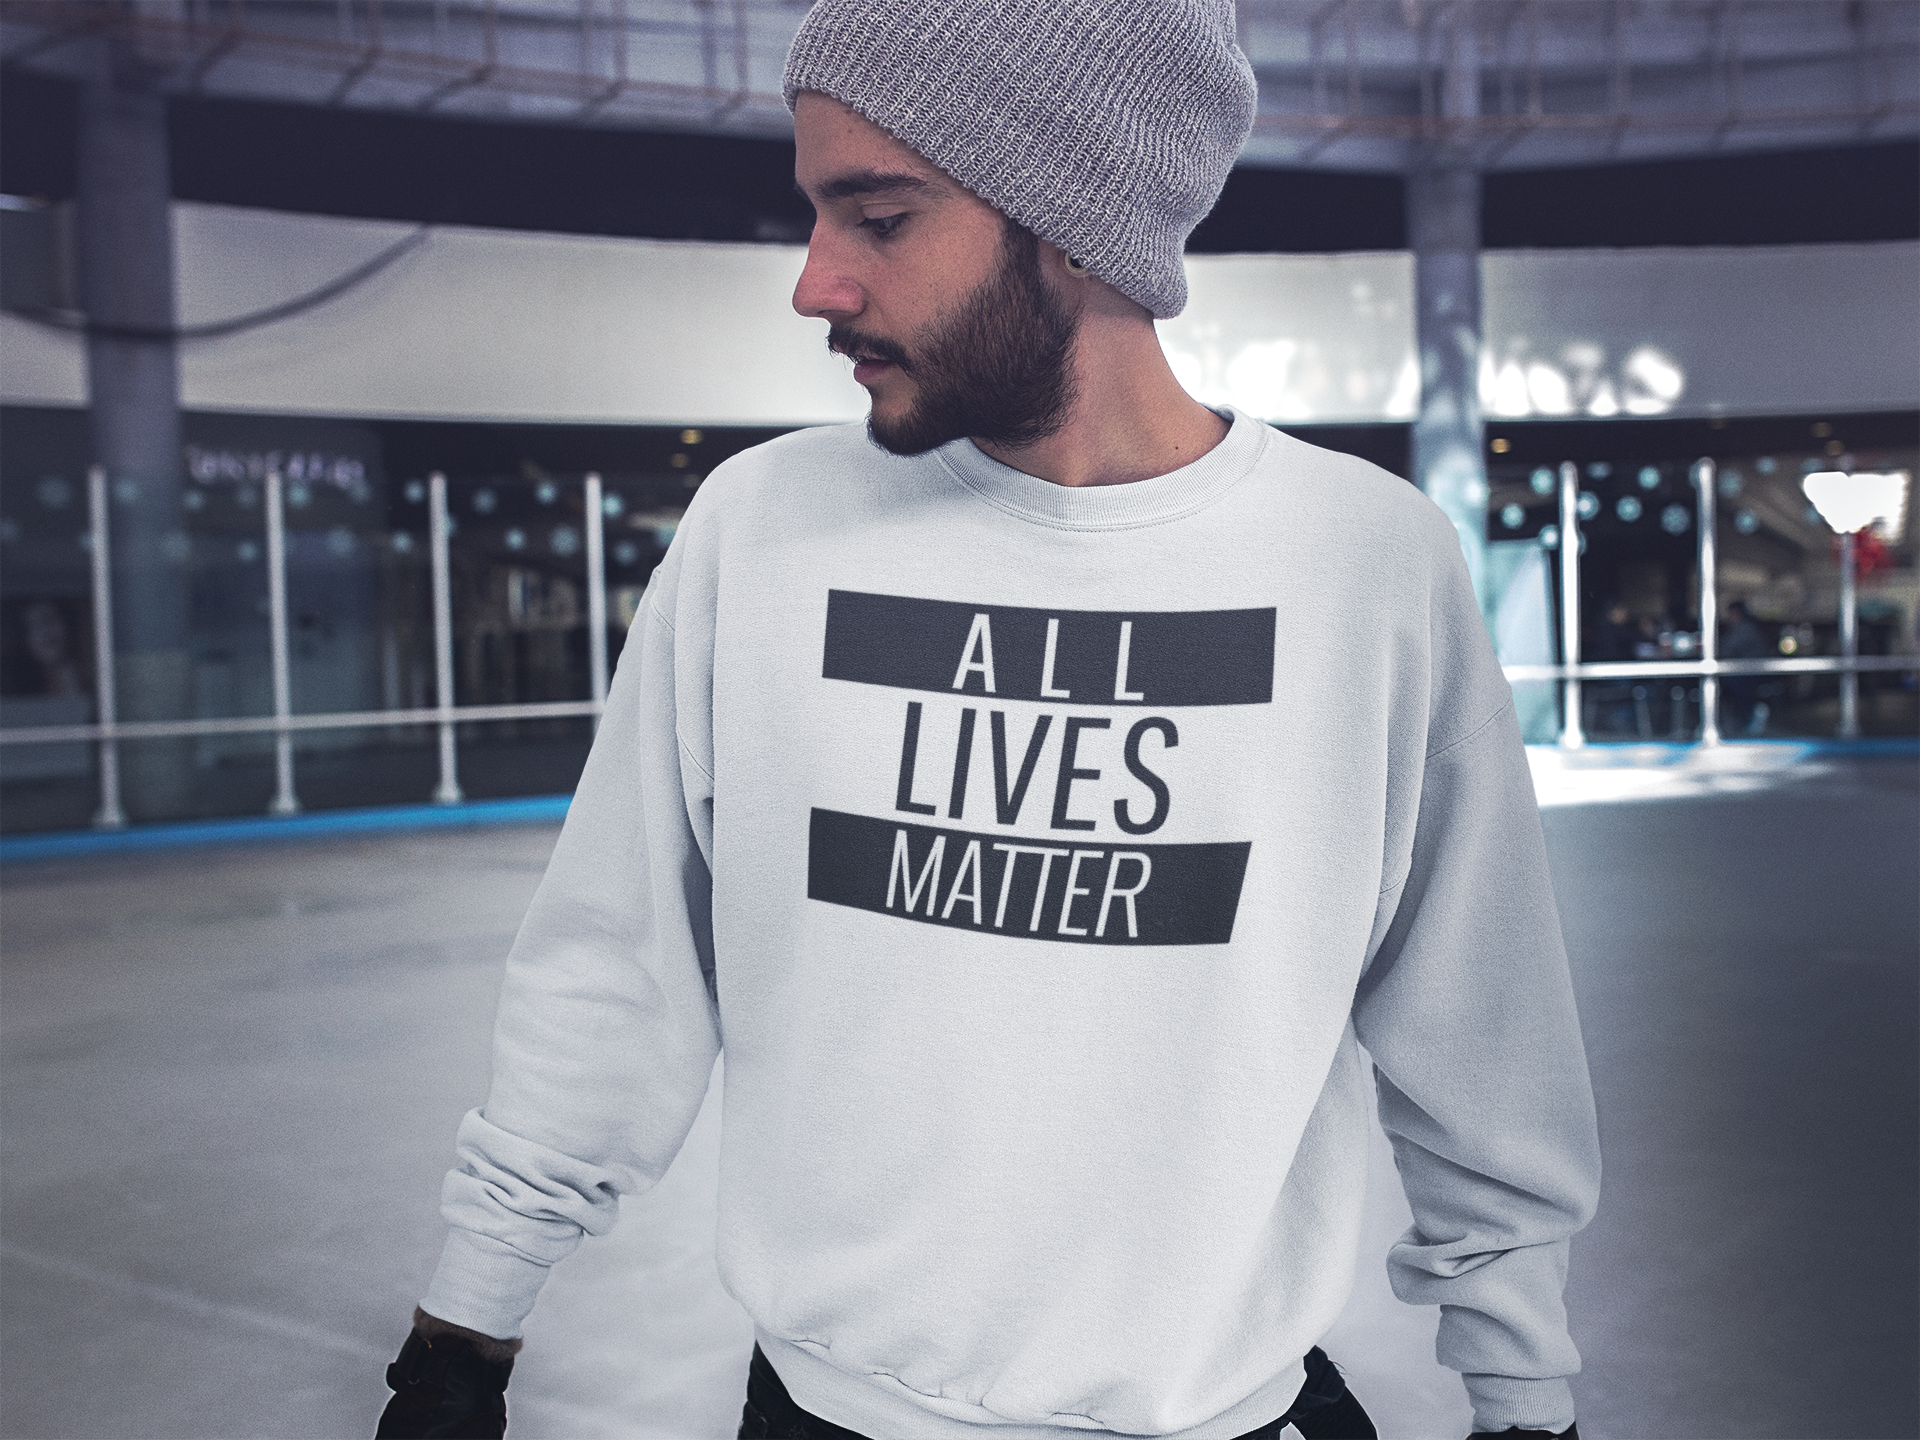 Unisex Sweatshirt All Lives Matter, Lika villkor för alla, Alla människor har samma värde, sluta med segregeringen